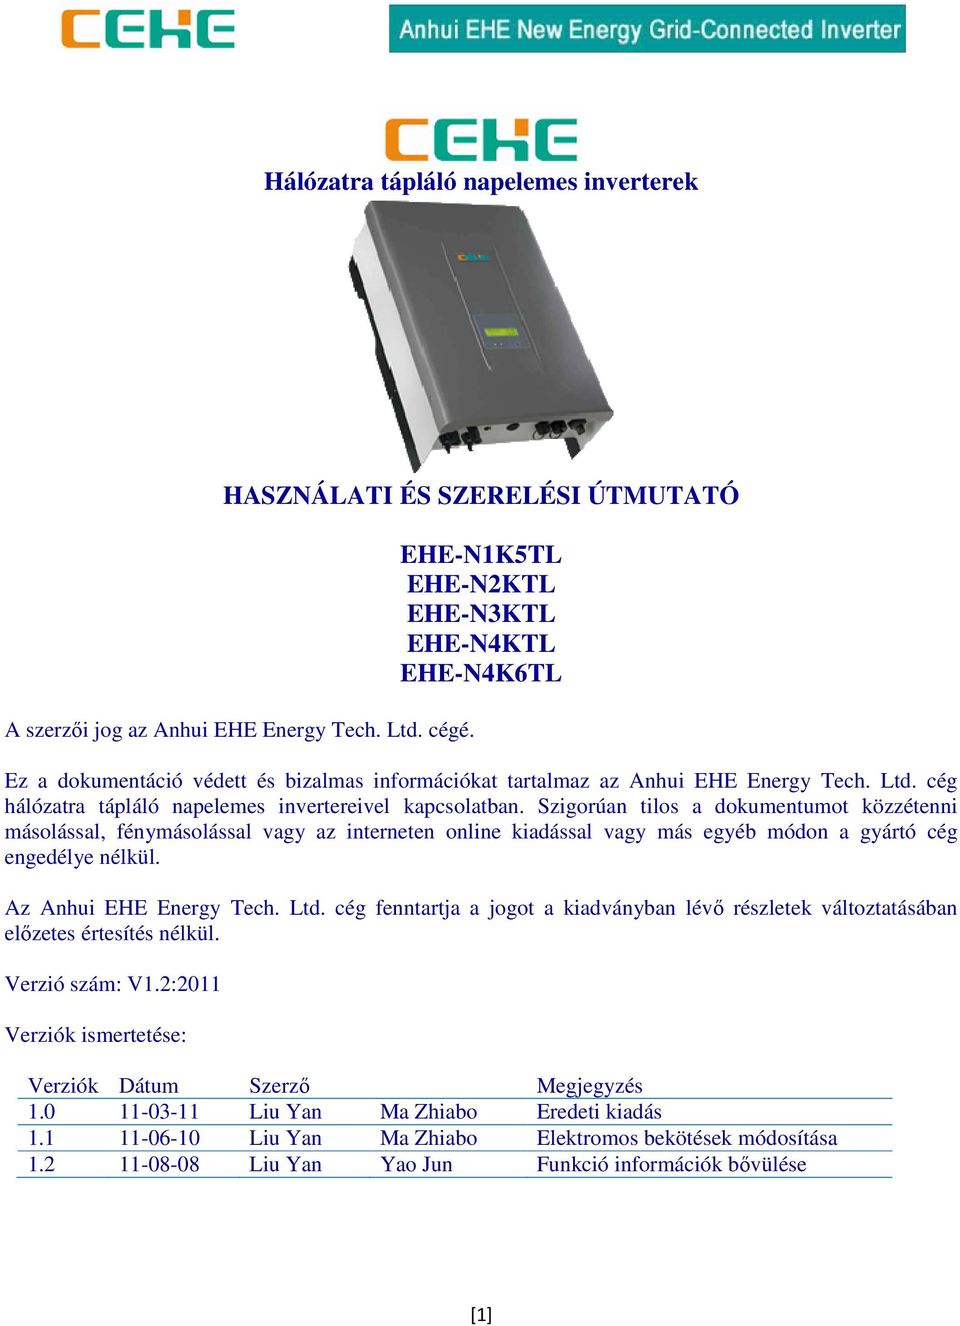 Hálózatra tápláló napelemes inverterek HASZNÁLATI ÉS SZERELÉSI ÚTMUTATÓ EHE-N1K5TL  EHE-N2KTL EHE-N3KTL EHE-N4KTL EHE-N4K6TL - PDF Free Download